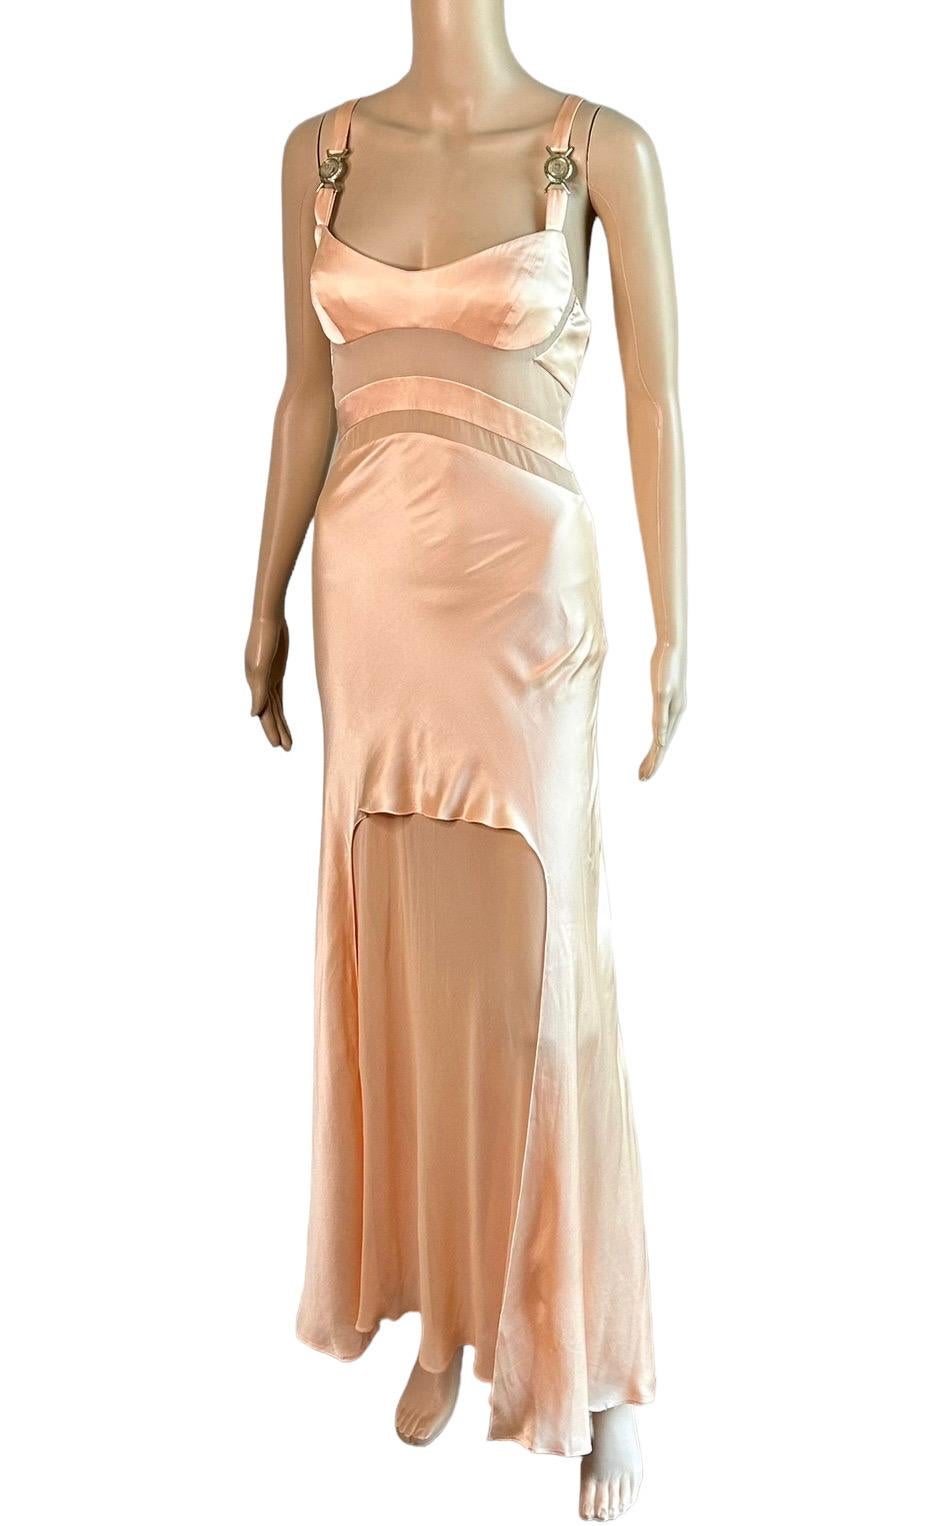 Versace S/S 2005 Laufsteg Durchsichtige Paneele Medusa Logo Seide Slip Abendkleid Kleid

Look 48 aus der Spring 2005 Collection'S.

Bitte beachten Sie: Das Größenetikett fehlt, aufgrund der Passform wird es in Größe S passen.

Die Träger wurden